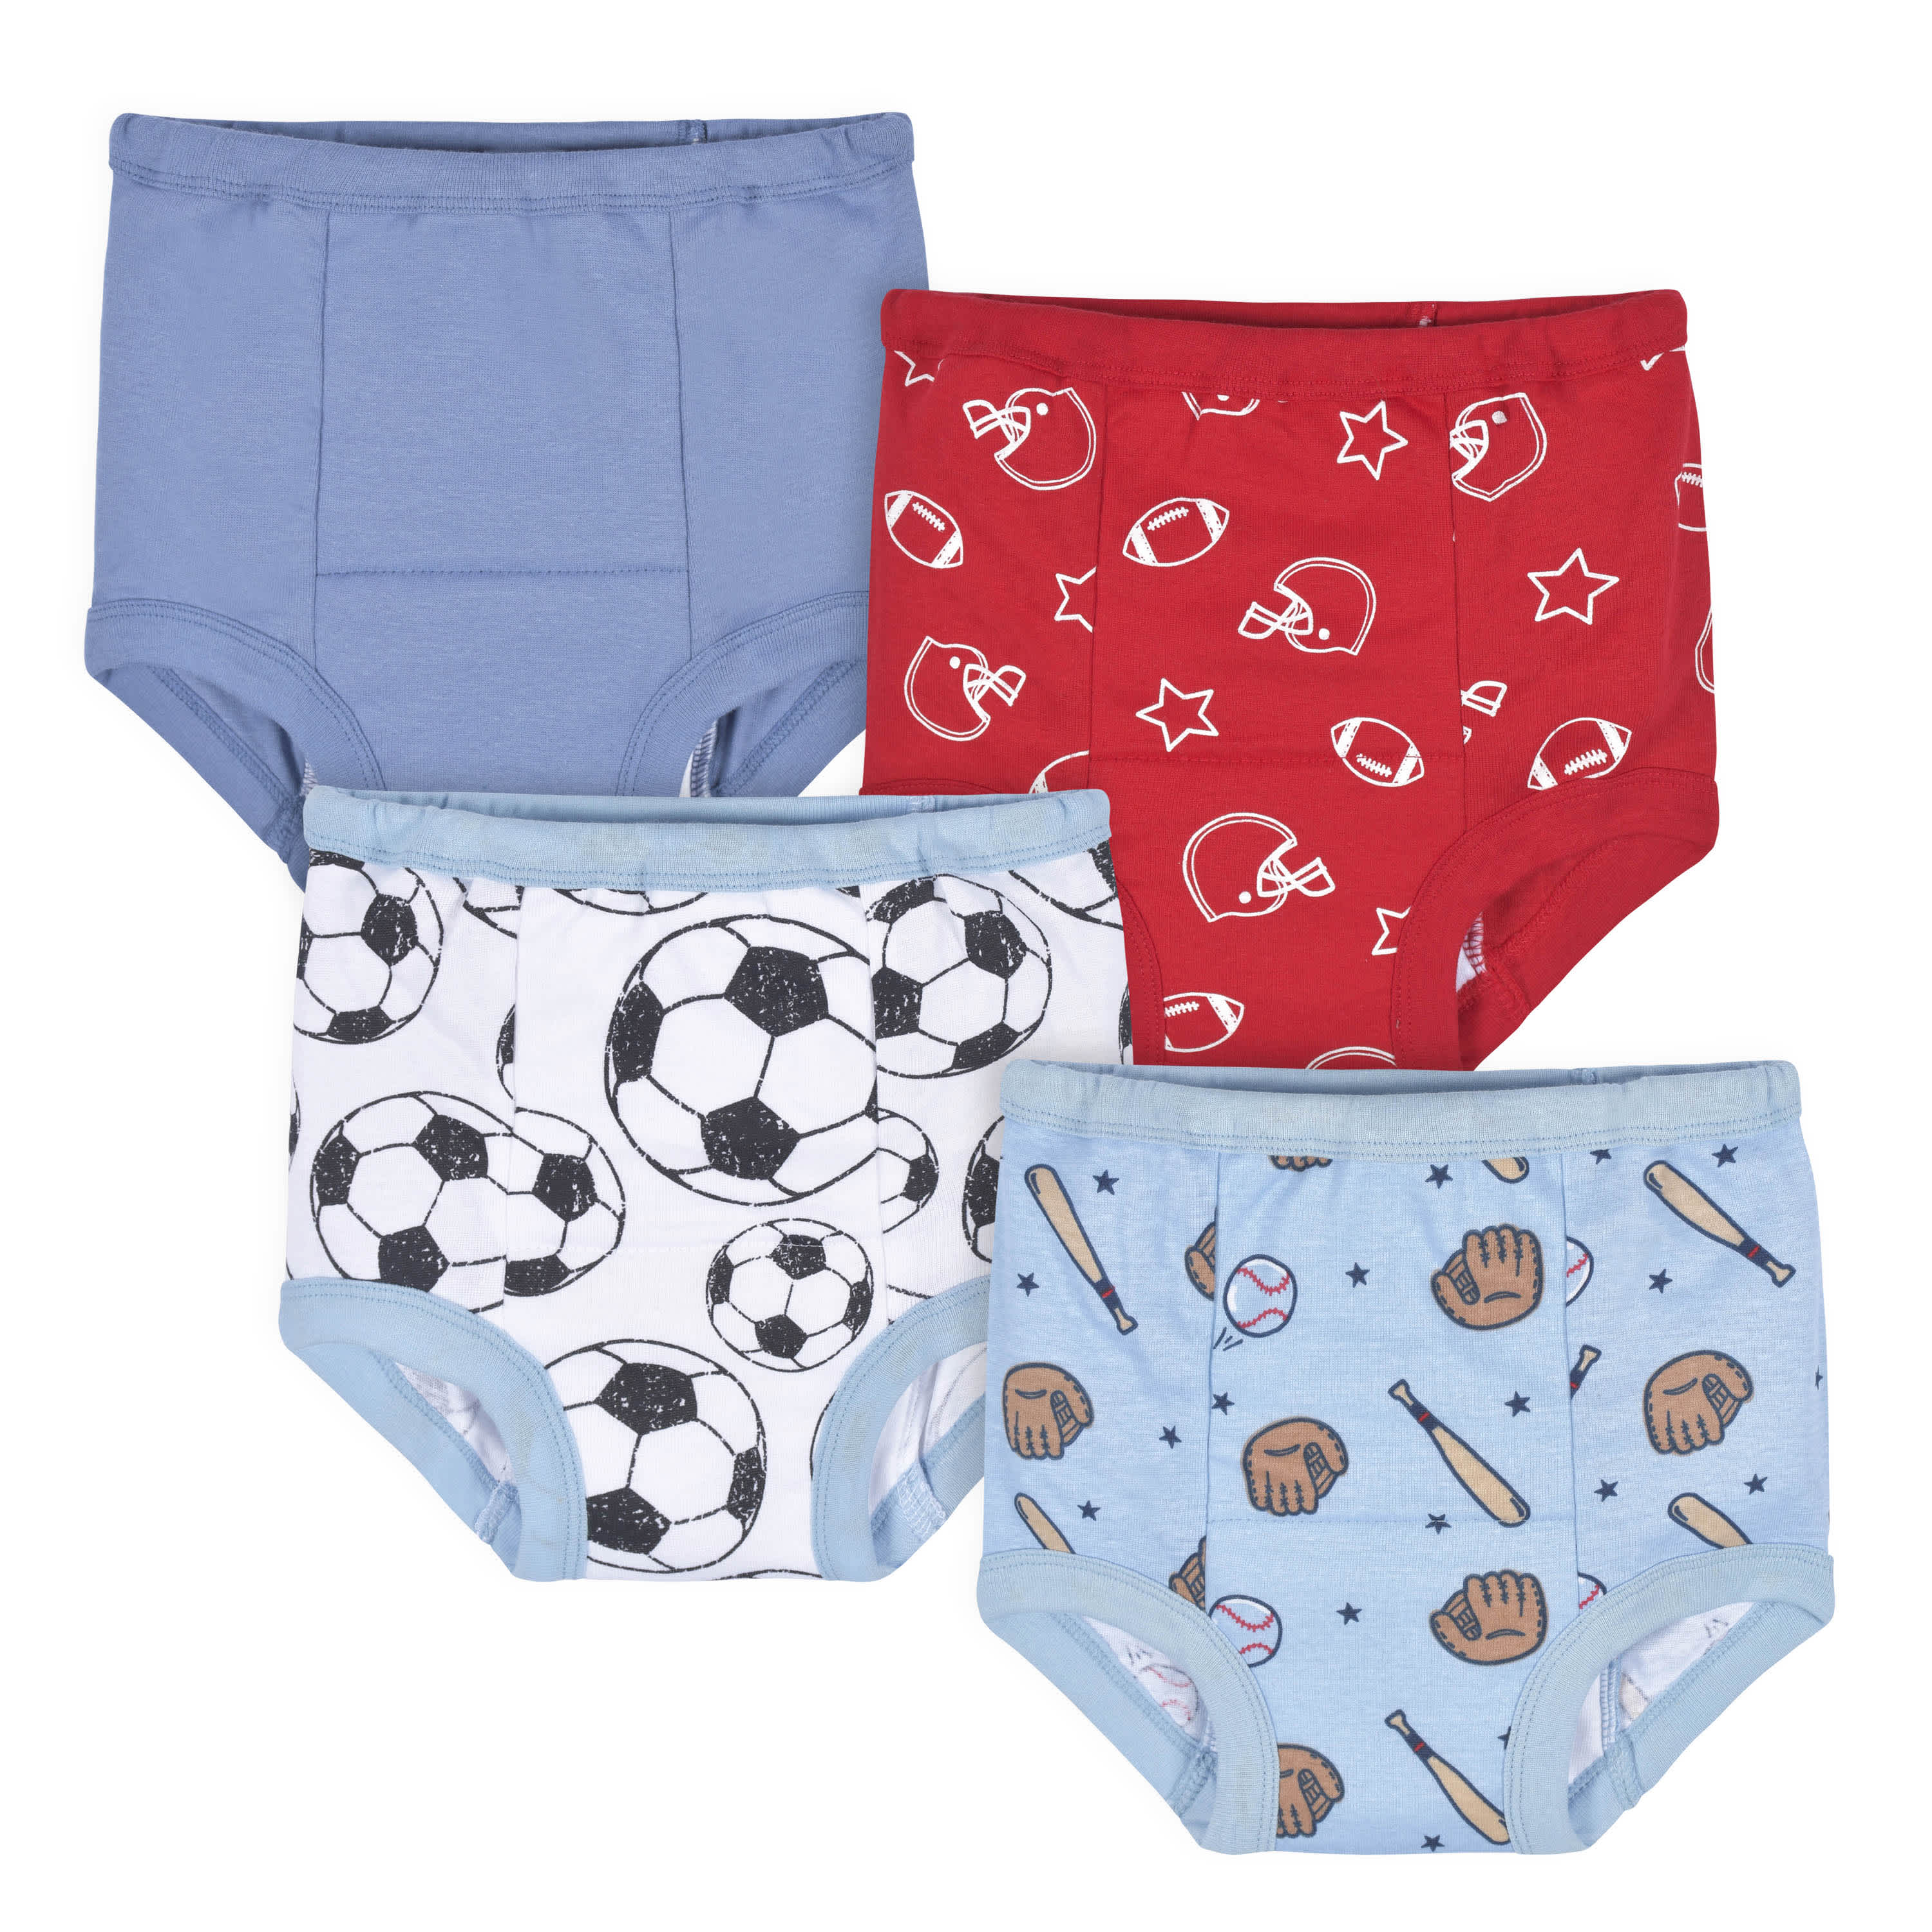 Toddler Training Potty Underwear (Dinosaur, 5T), 5T - Gerbes Super Markets